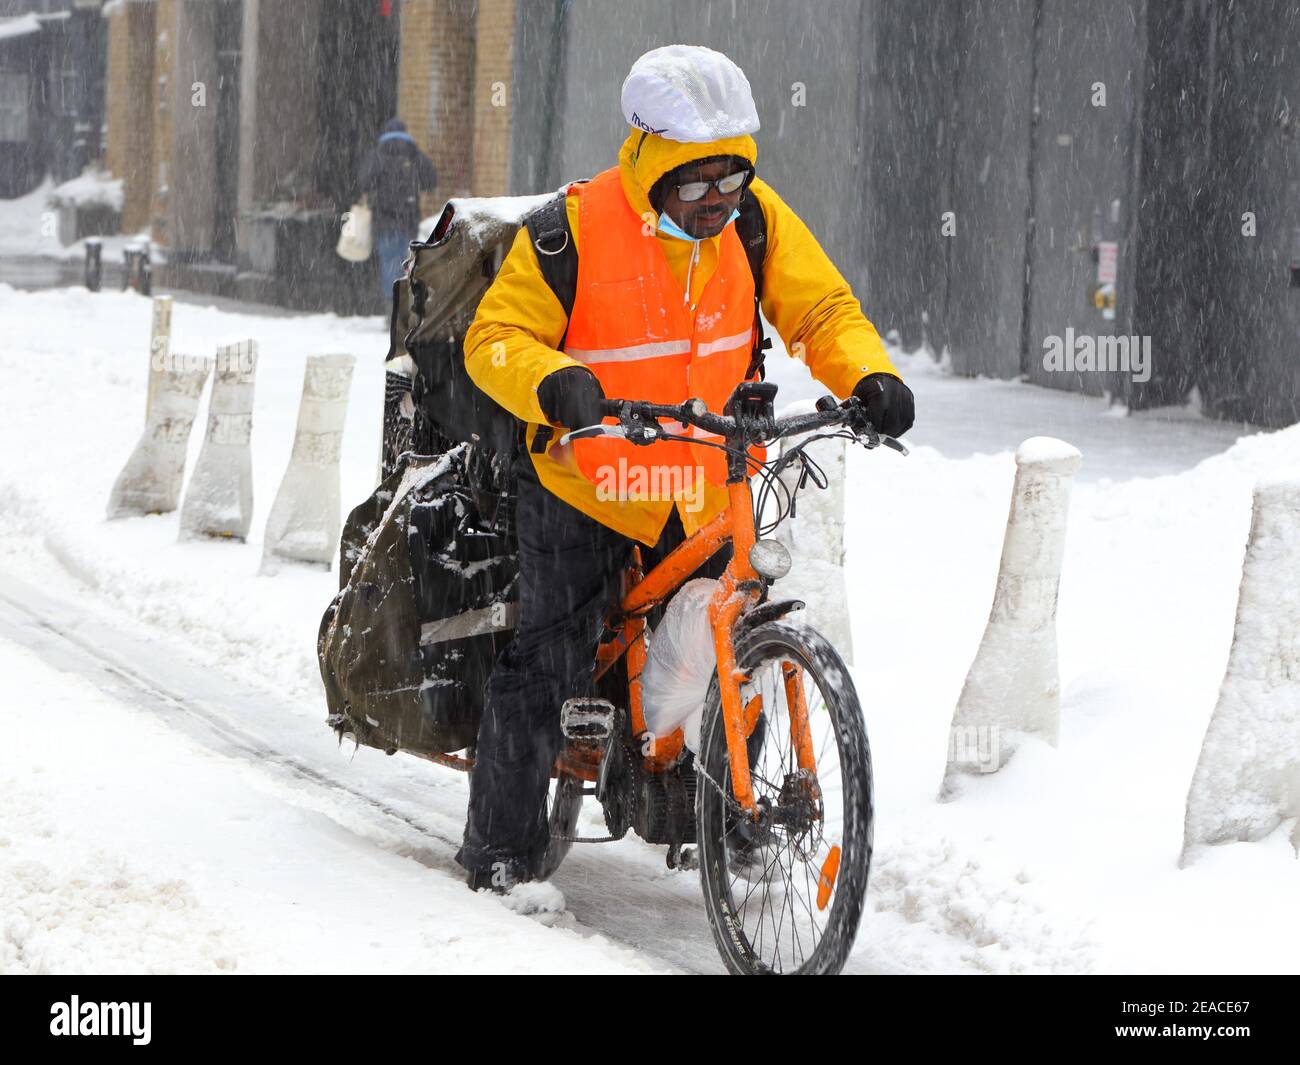 Una persona de parto que tiene un mal día tratando de pedalear una motocicleta de carga pesada con problemas mecánicos (batería/motor muertos) Durante una tormenta de nieve en Nueva York Foto de stock